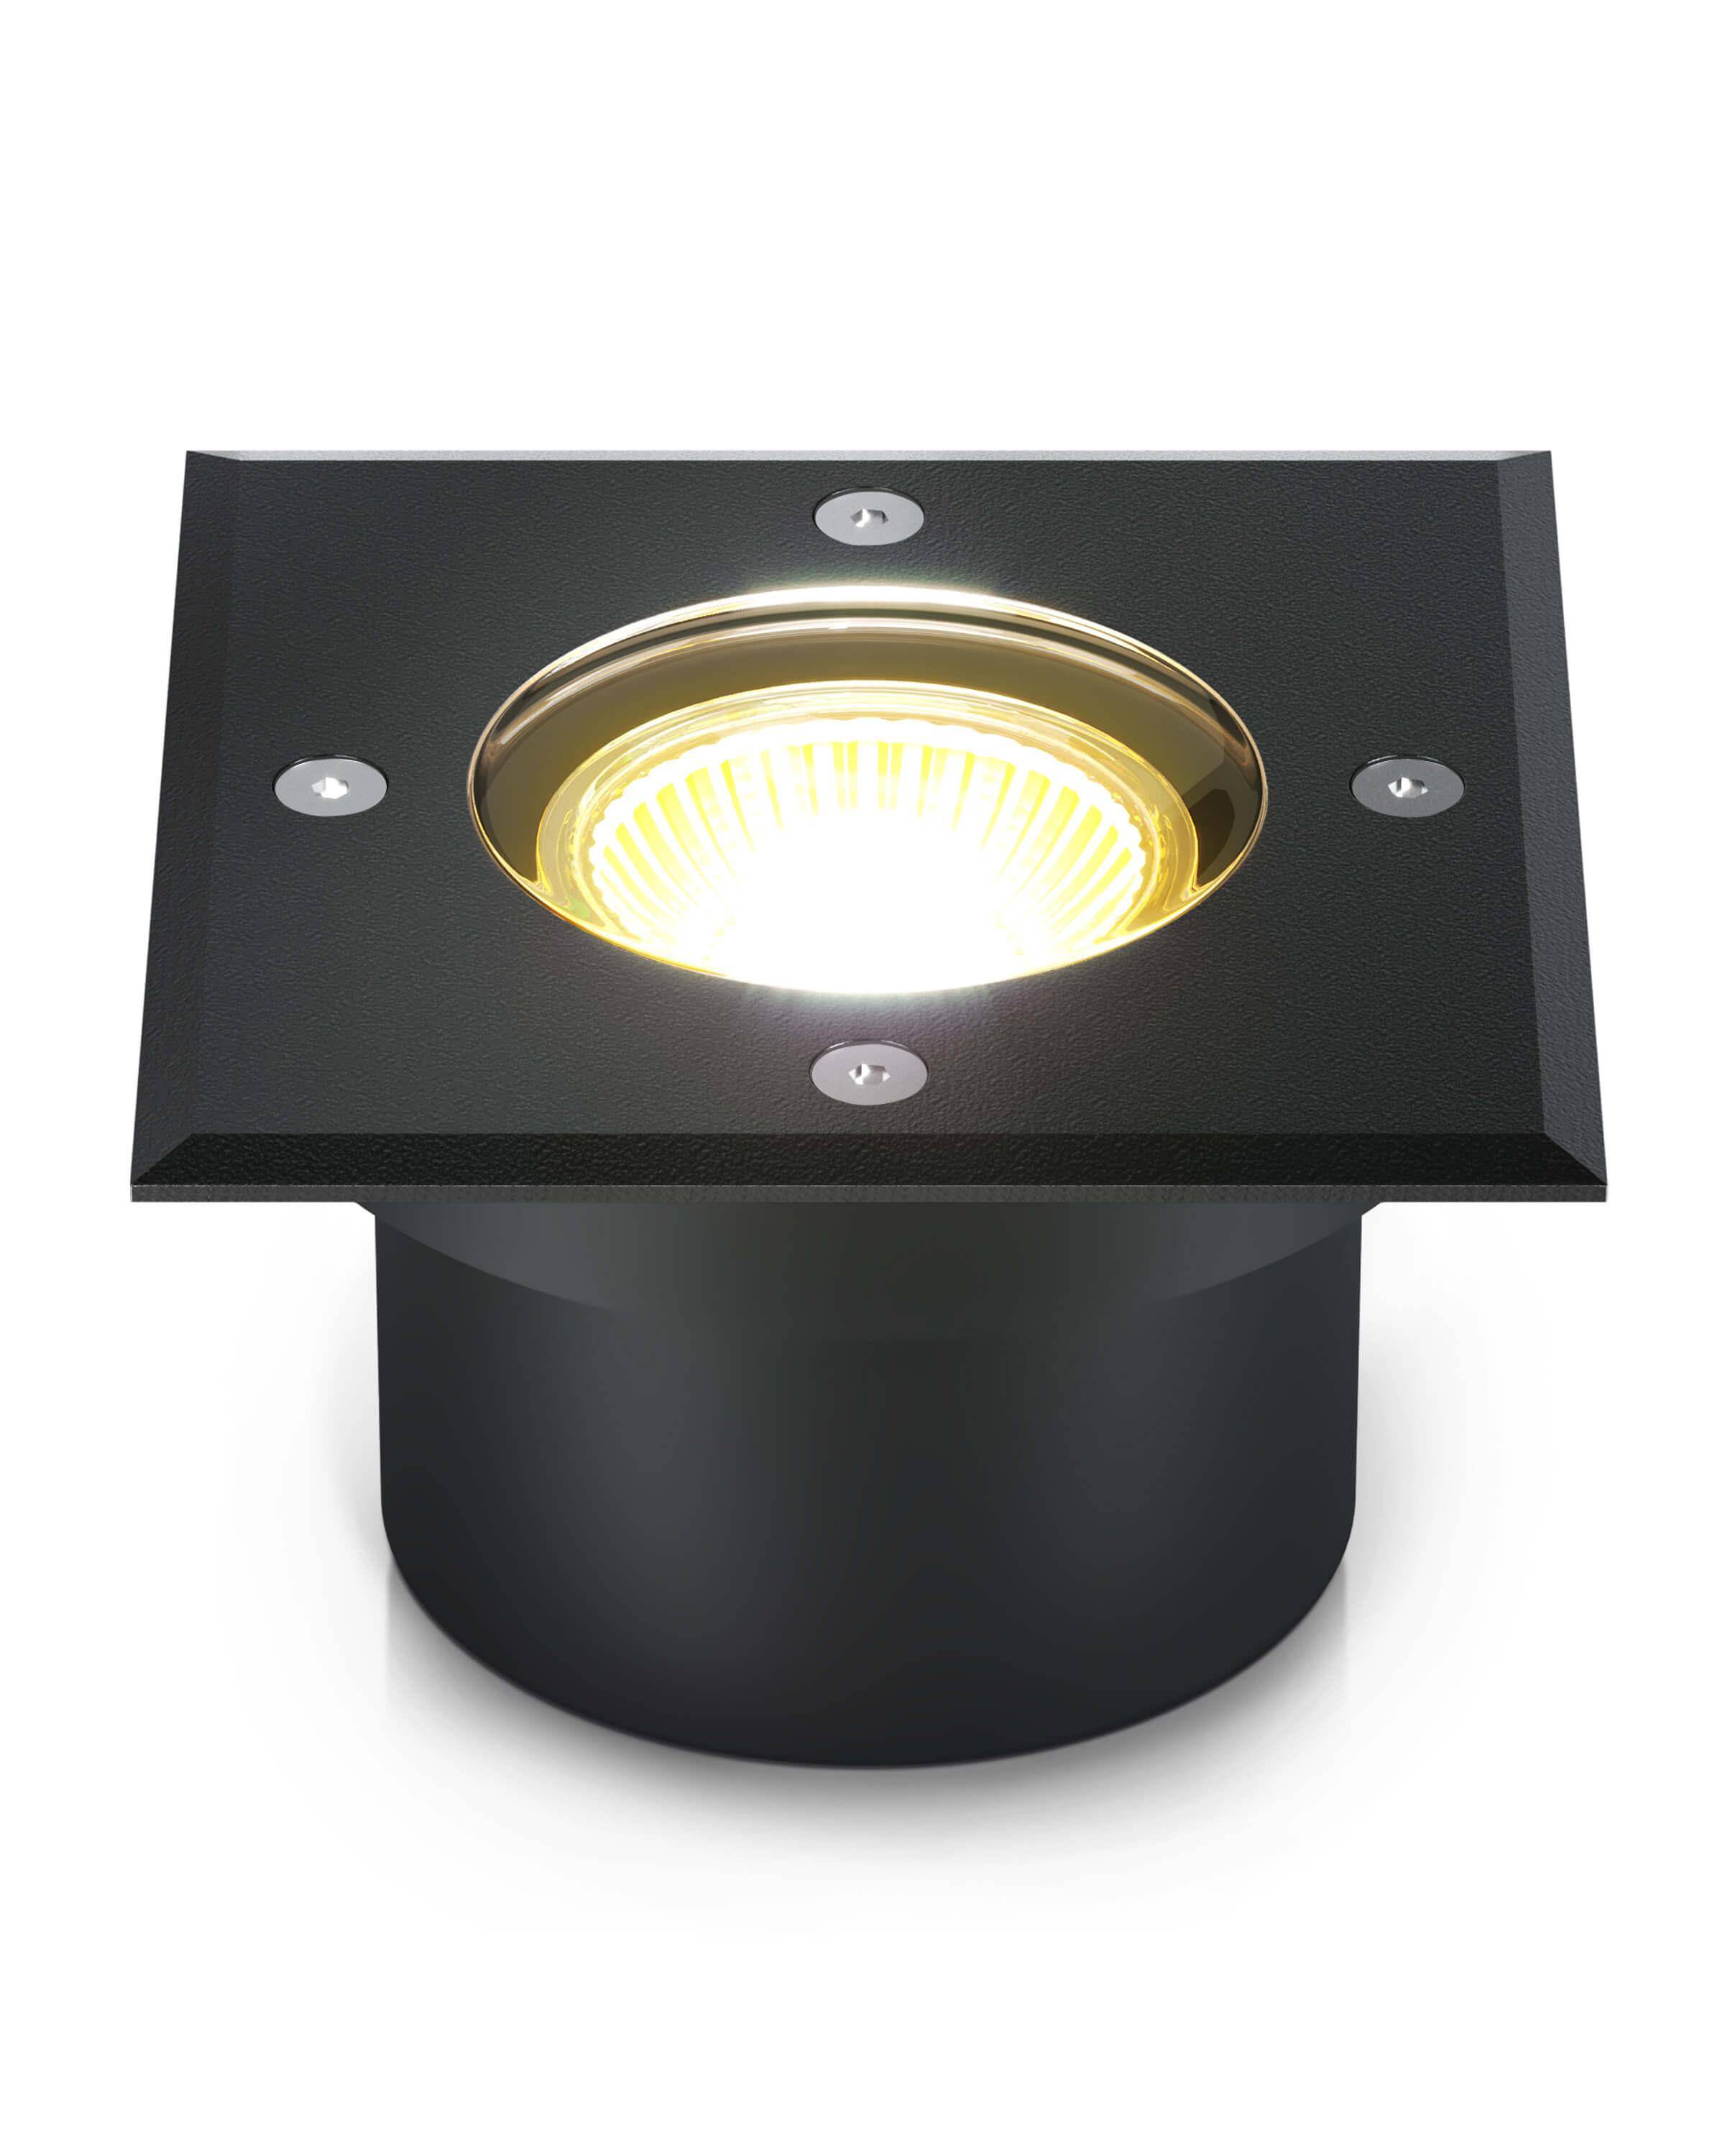 LED Bodenstrahler IP67 - flach, schwarz, eckig inkl. LED-Modul 230V 5W dimmbar